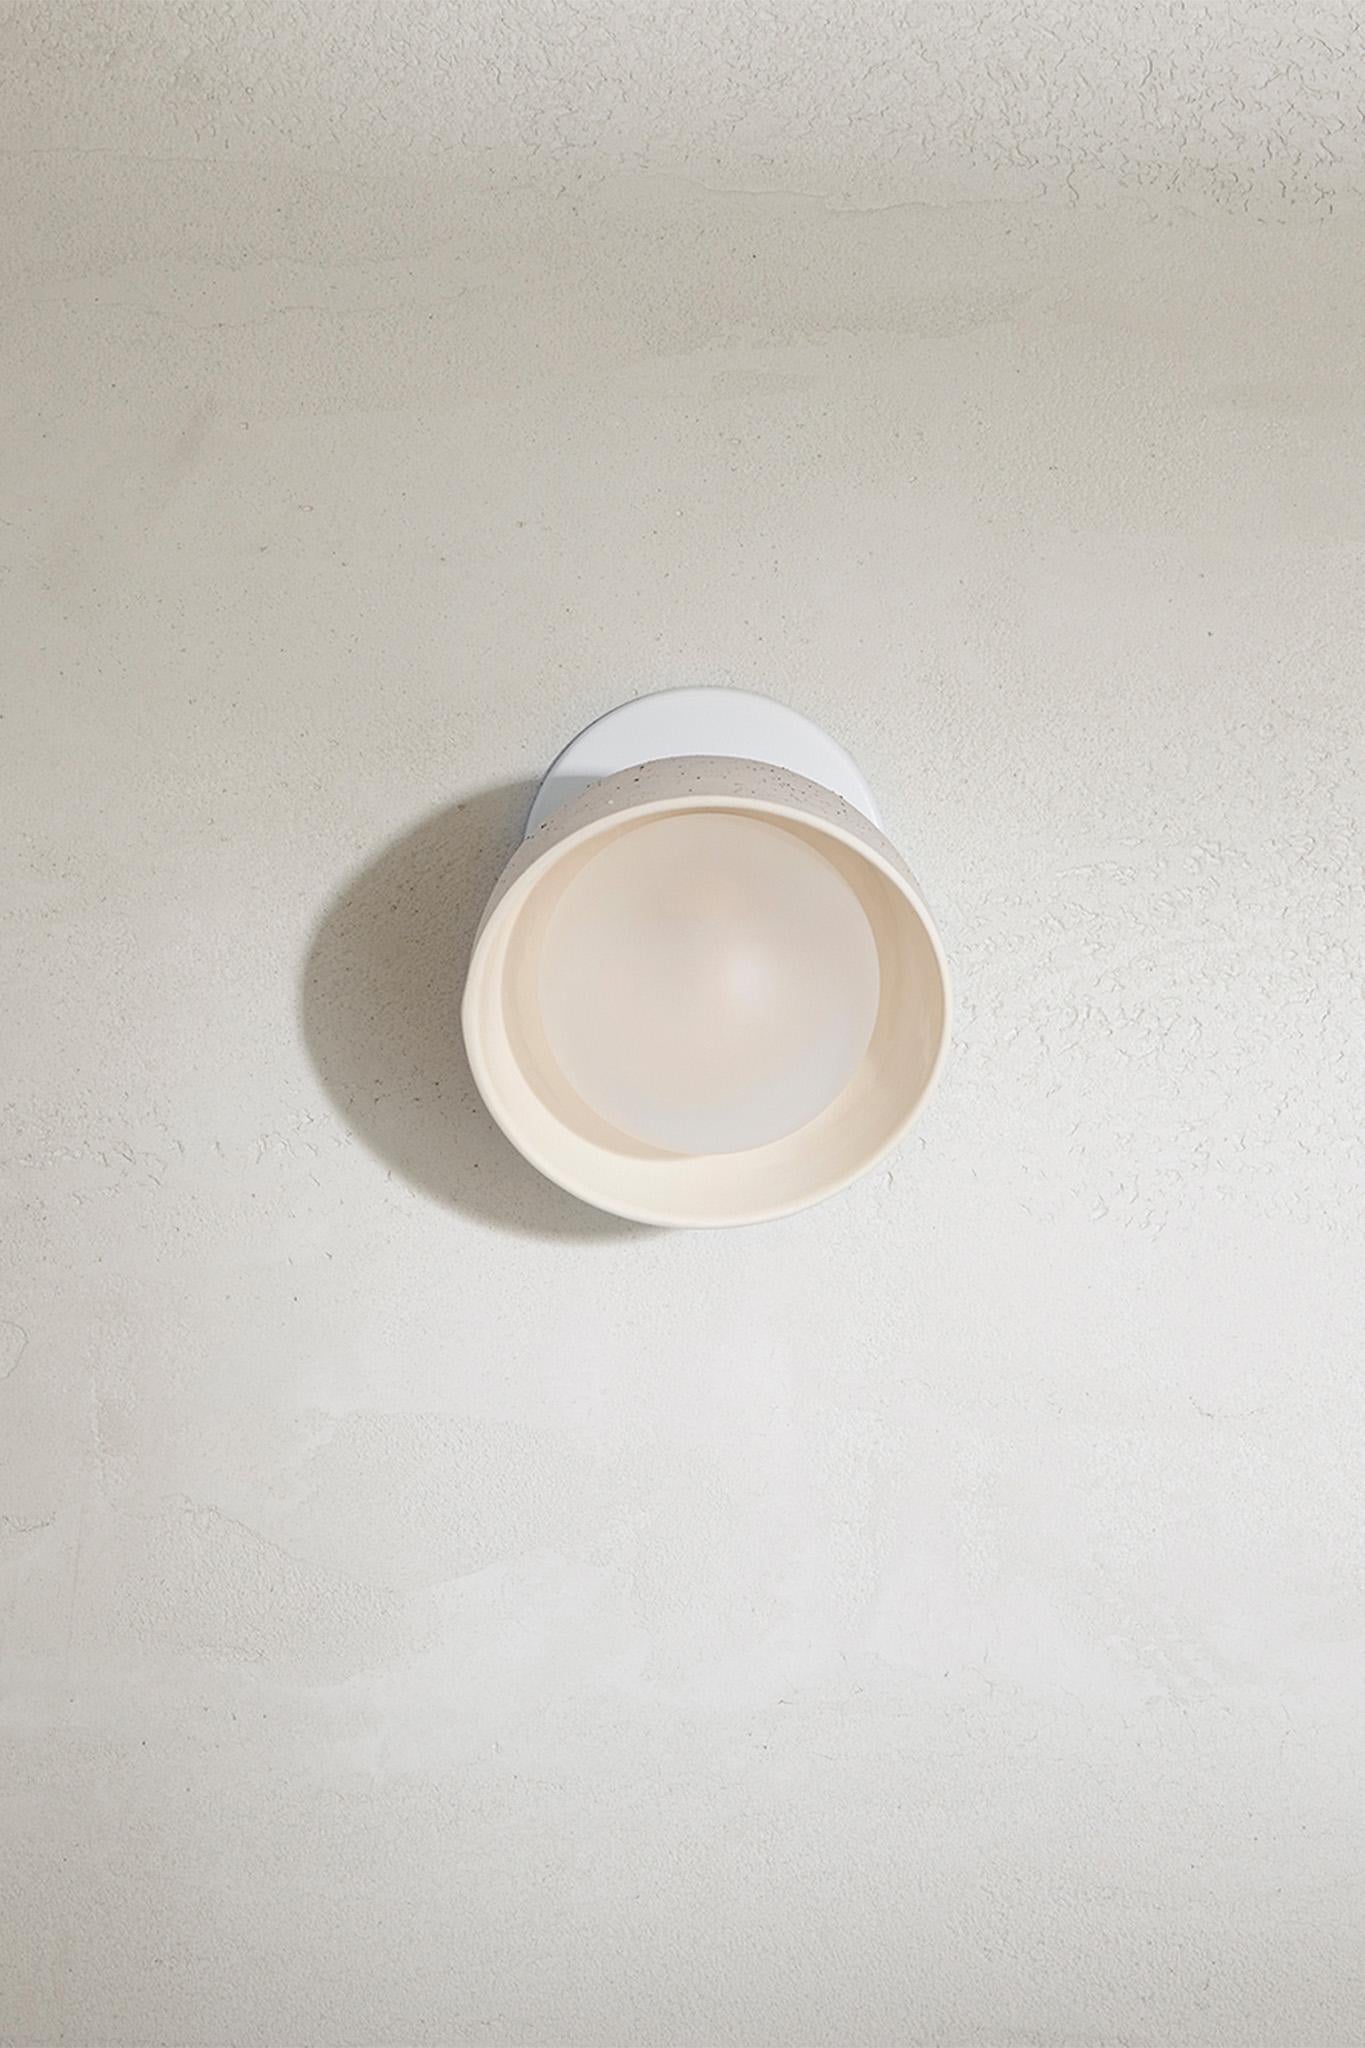 Die Terra 0 Short Articulating Wall Light verfügt über einen kurzen oder langen Gelenkarm, der sowohl direktional als auch funktional ist. Die einzigartige gewölbte Keramikfassung schafft eine kontrollierte Lichtquelle. Die Terra 0 Short